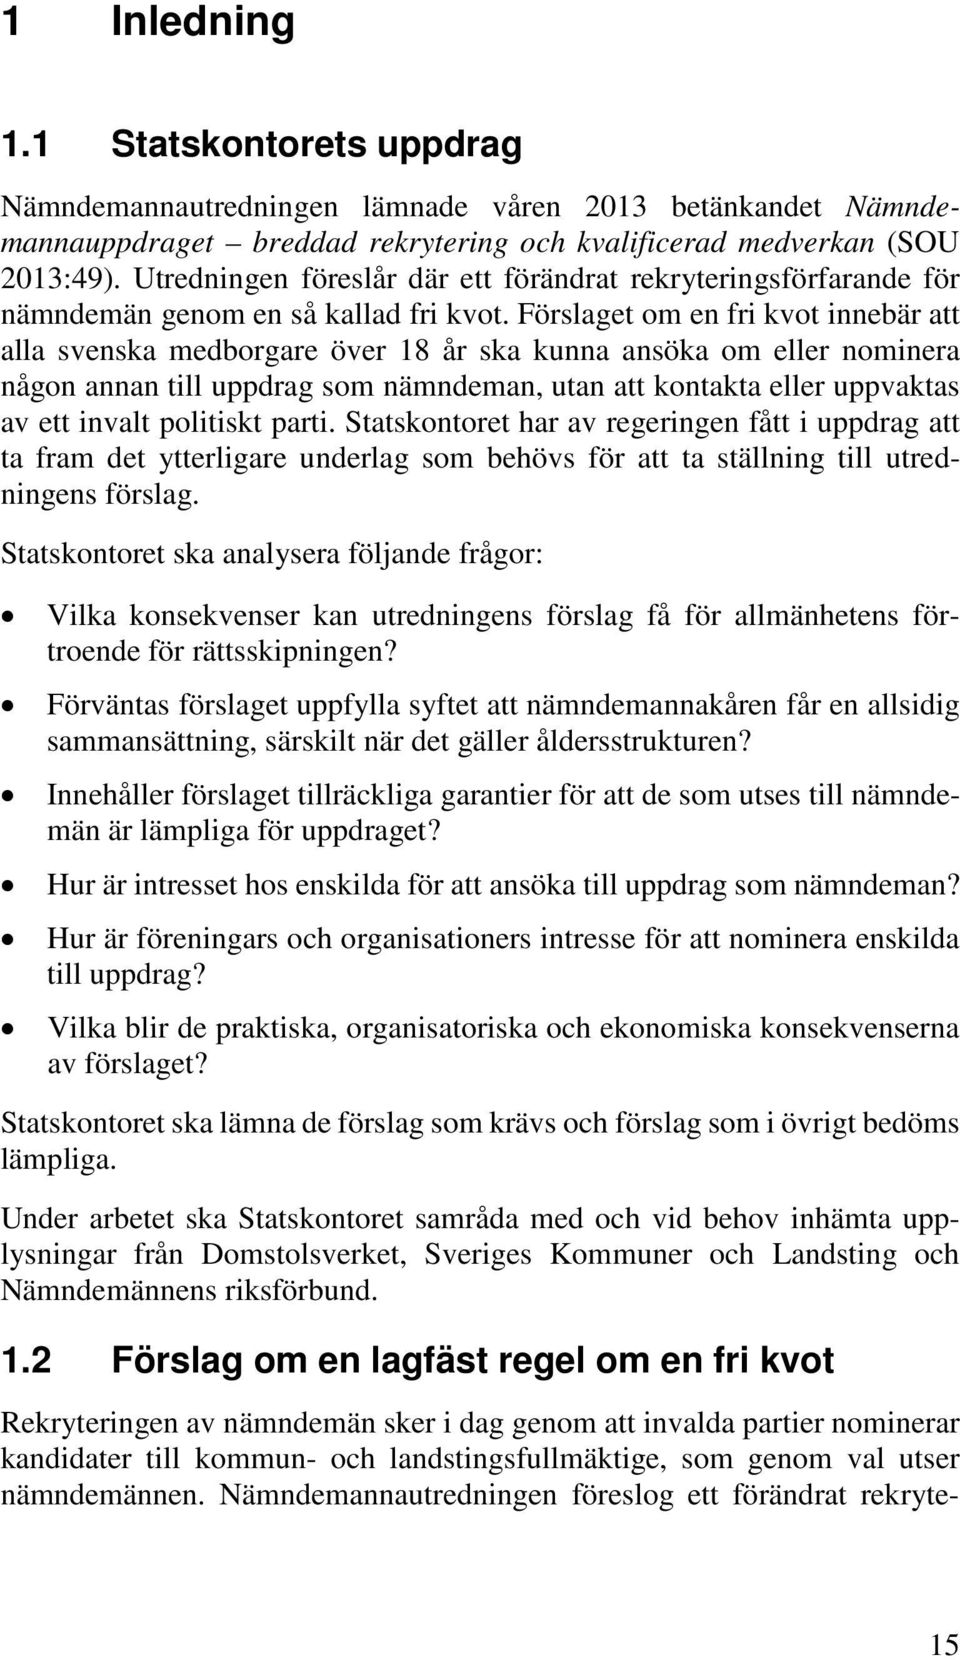 Förslaget om en fri kvot innebär att alla svenska medborgare över 18 år ska kunna ansöka om eller nominera någon annan till uppdrag som nämndeman, utan att kontakta eller uppvaktas av ett invalt